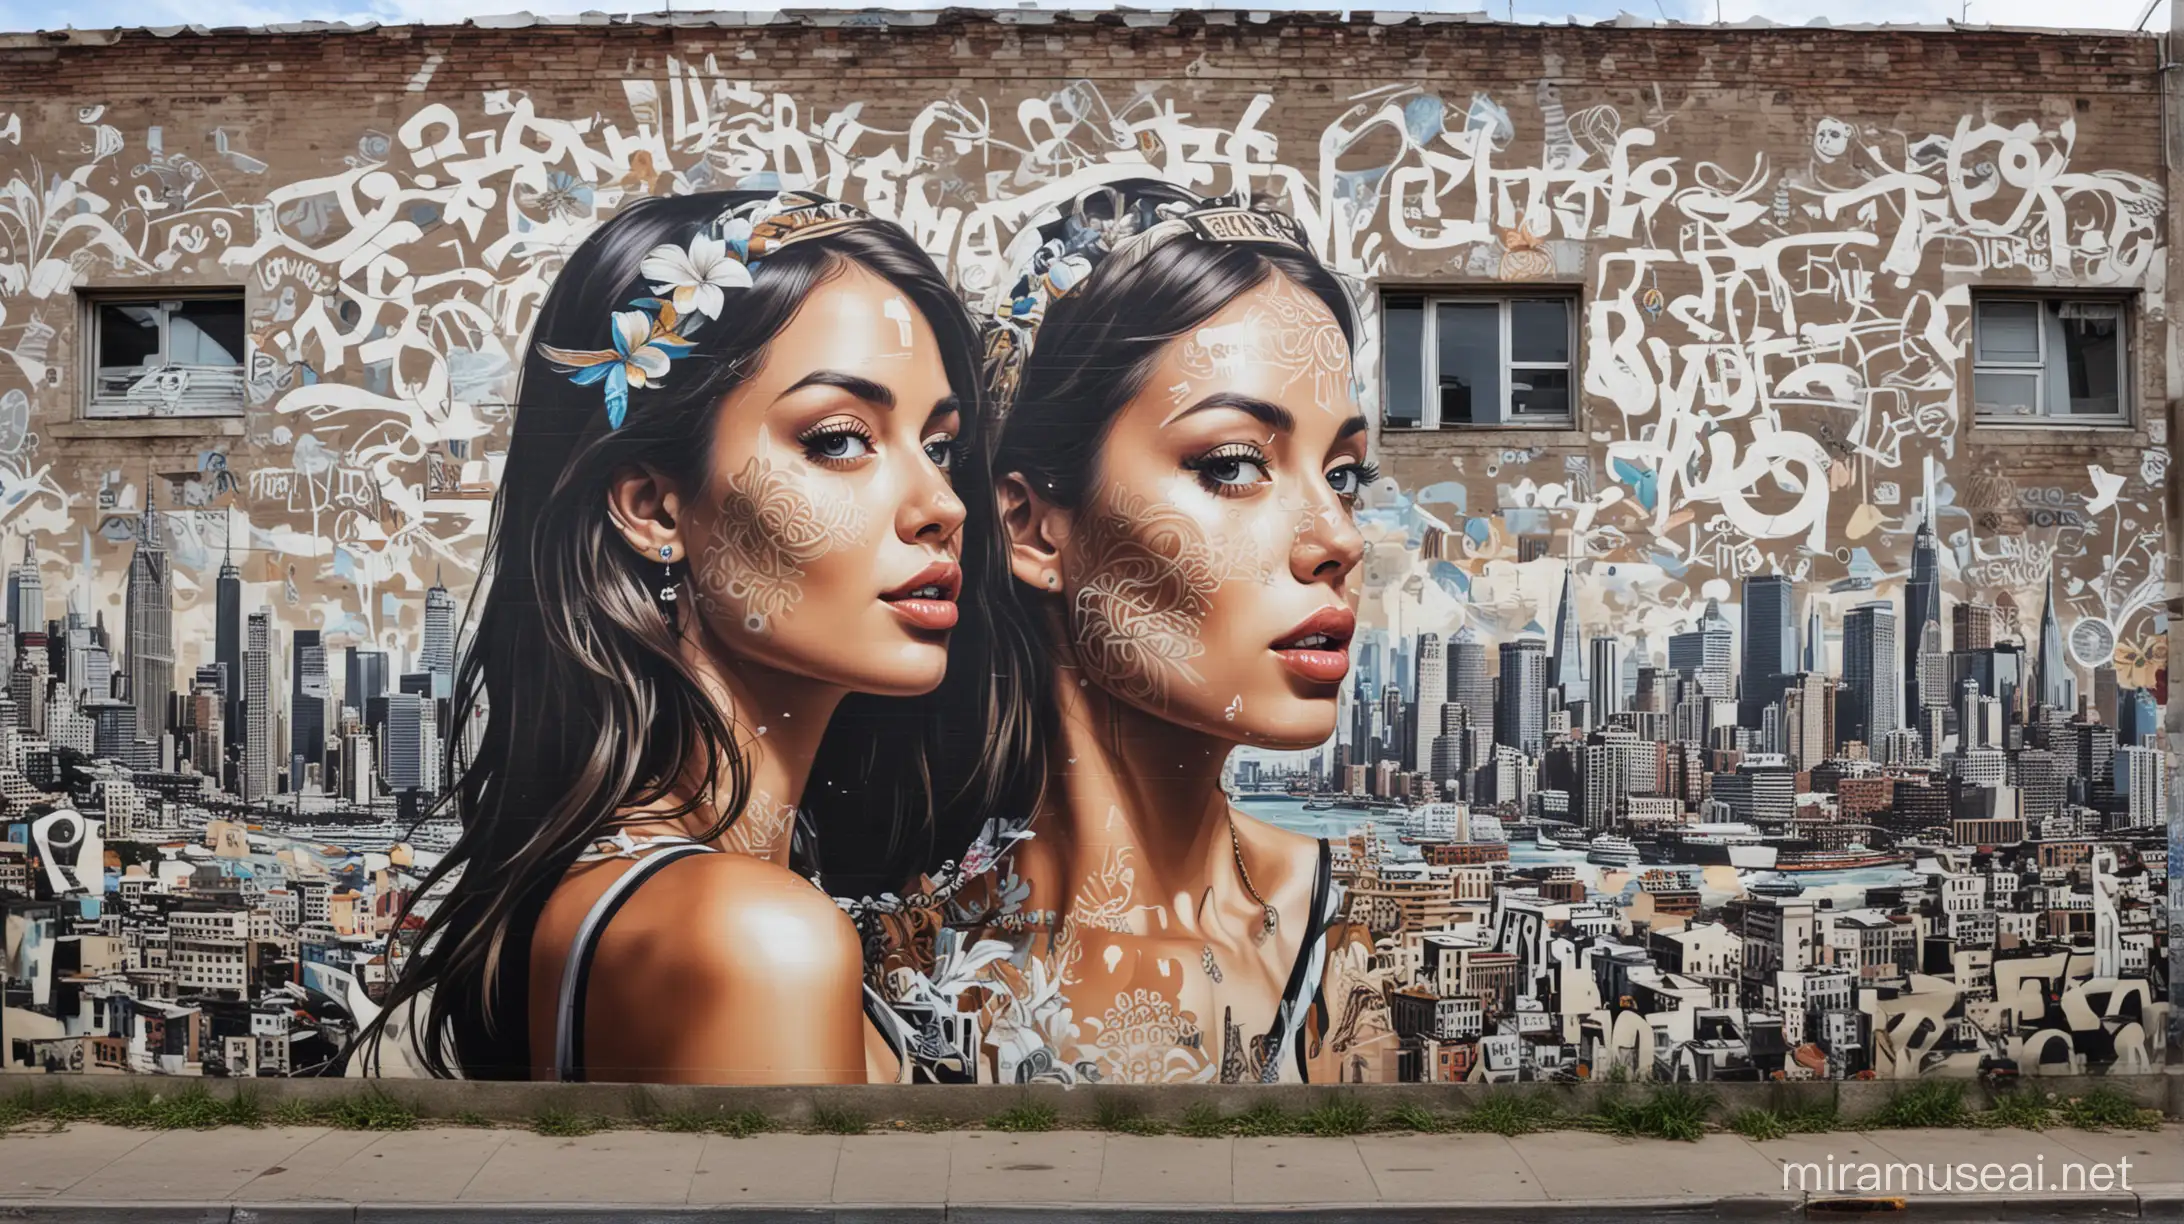 un panorama en mode street art tristan eaton et souvenirs voyage, plages de cocotiers, new-york, porto, rome 